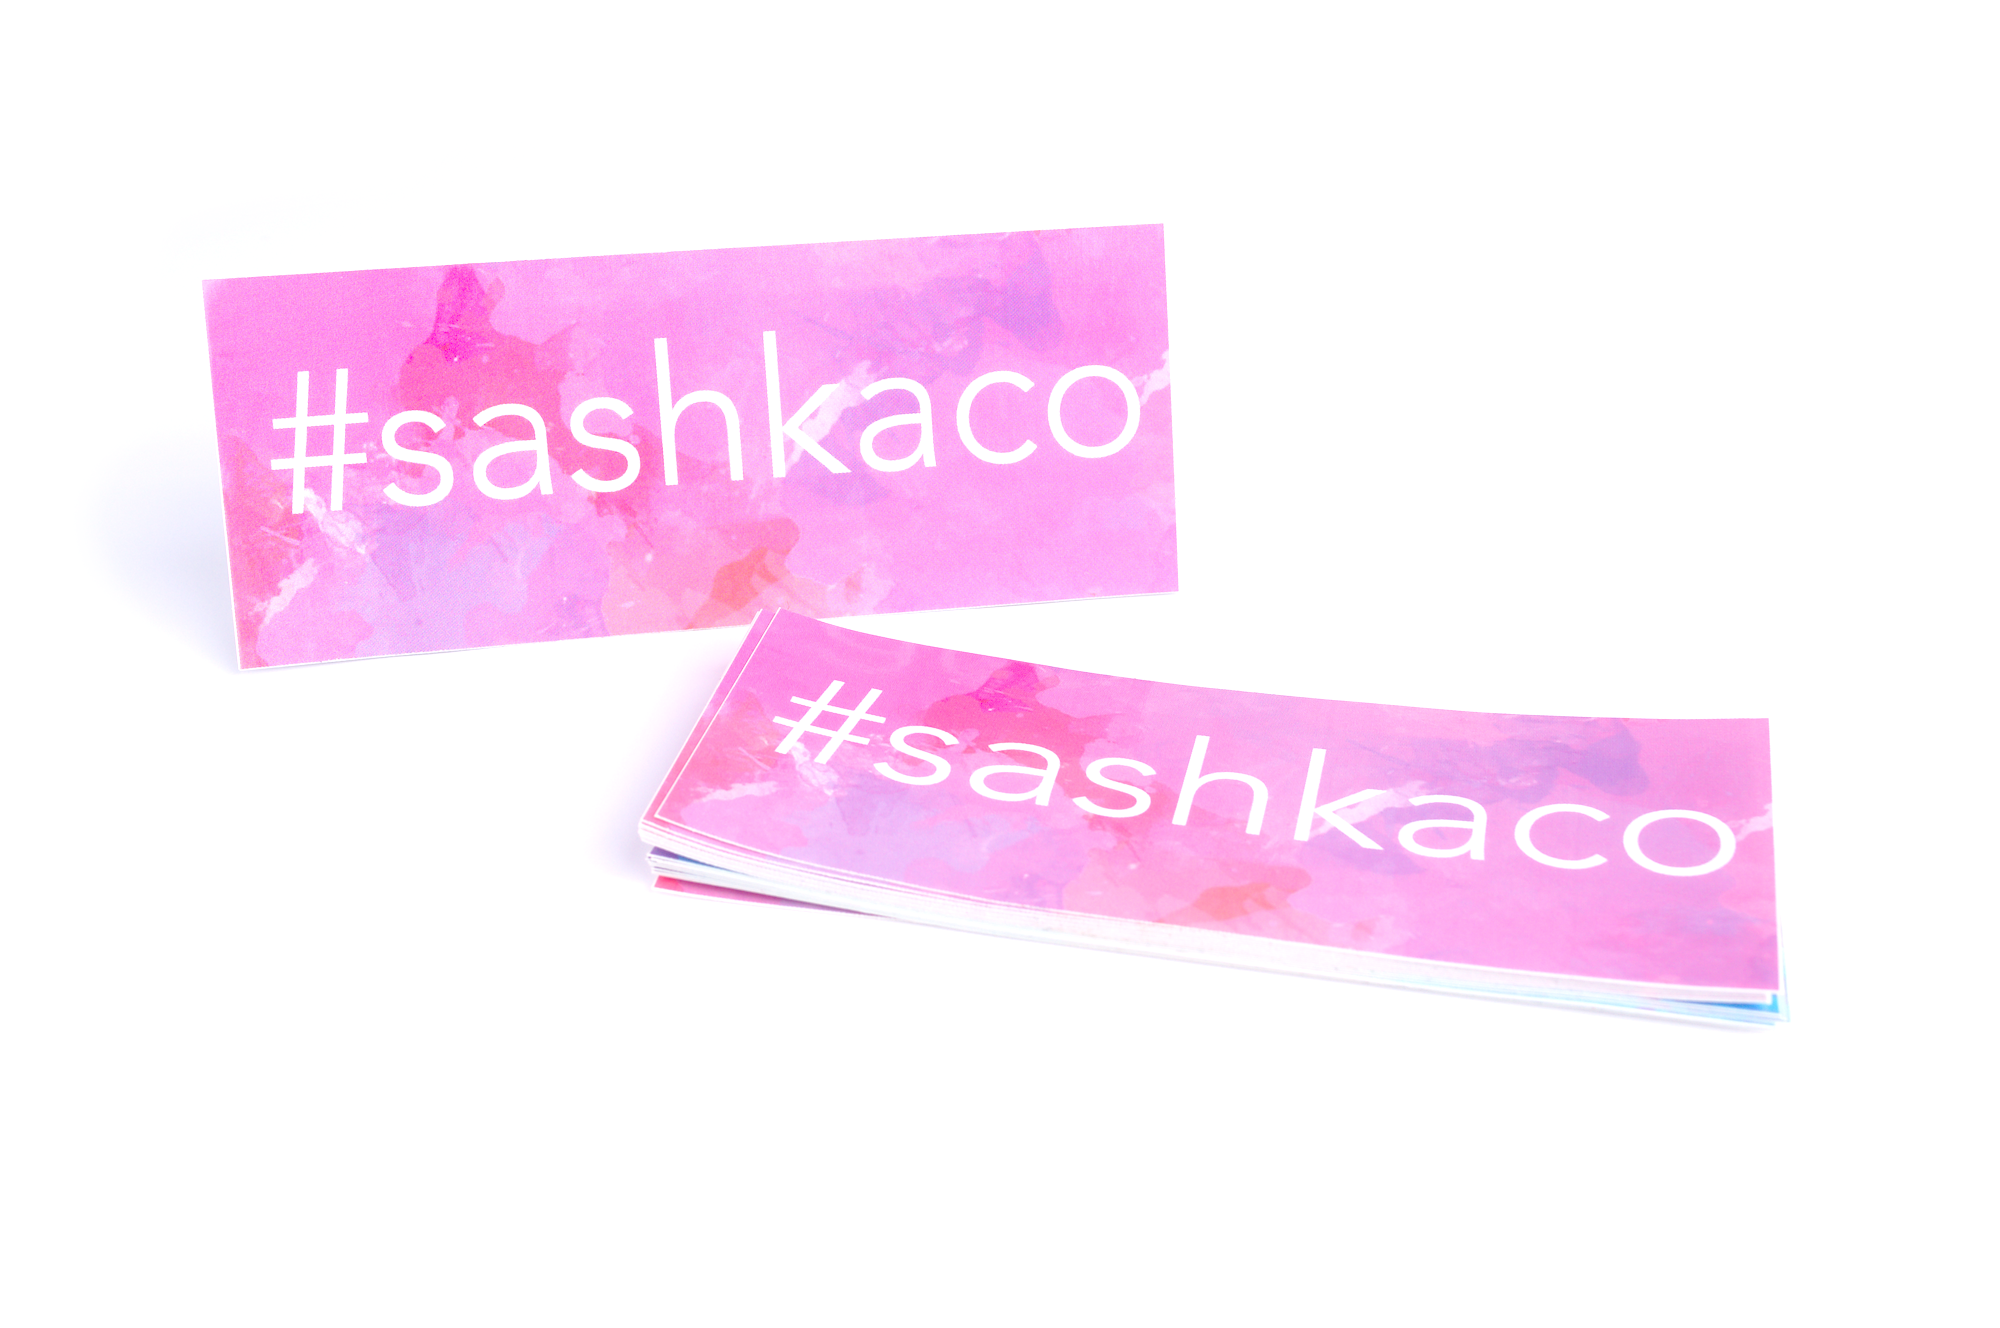 Sashka Co. Extended 8" Bracelet White/ Purple / Orange / Pink / Blue Colorful Swirl Bracelet - Extended 8"